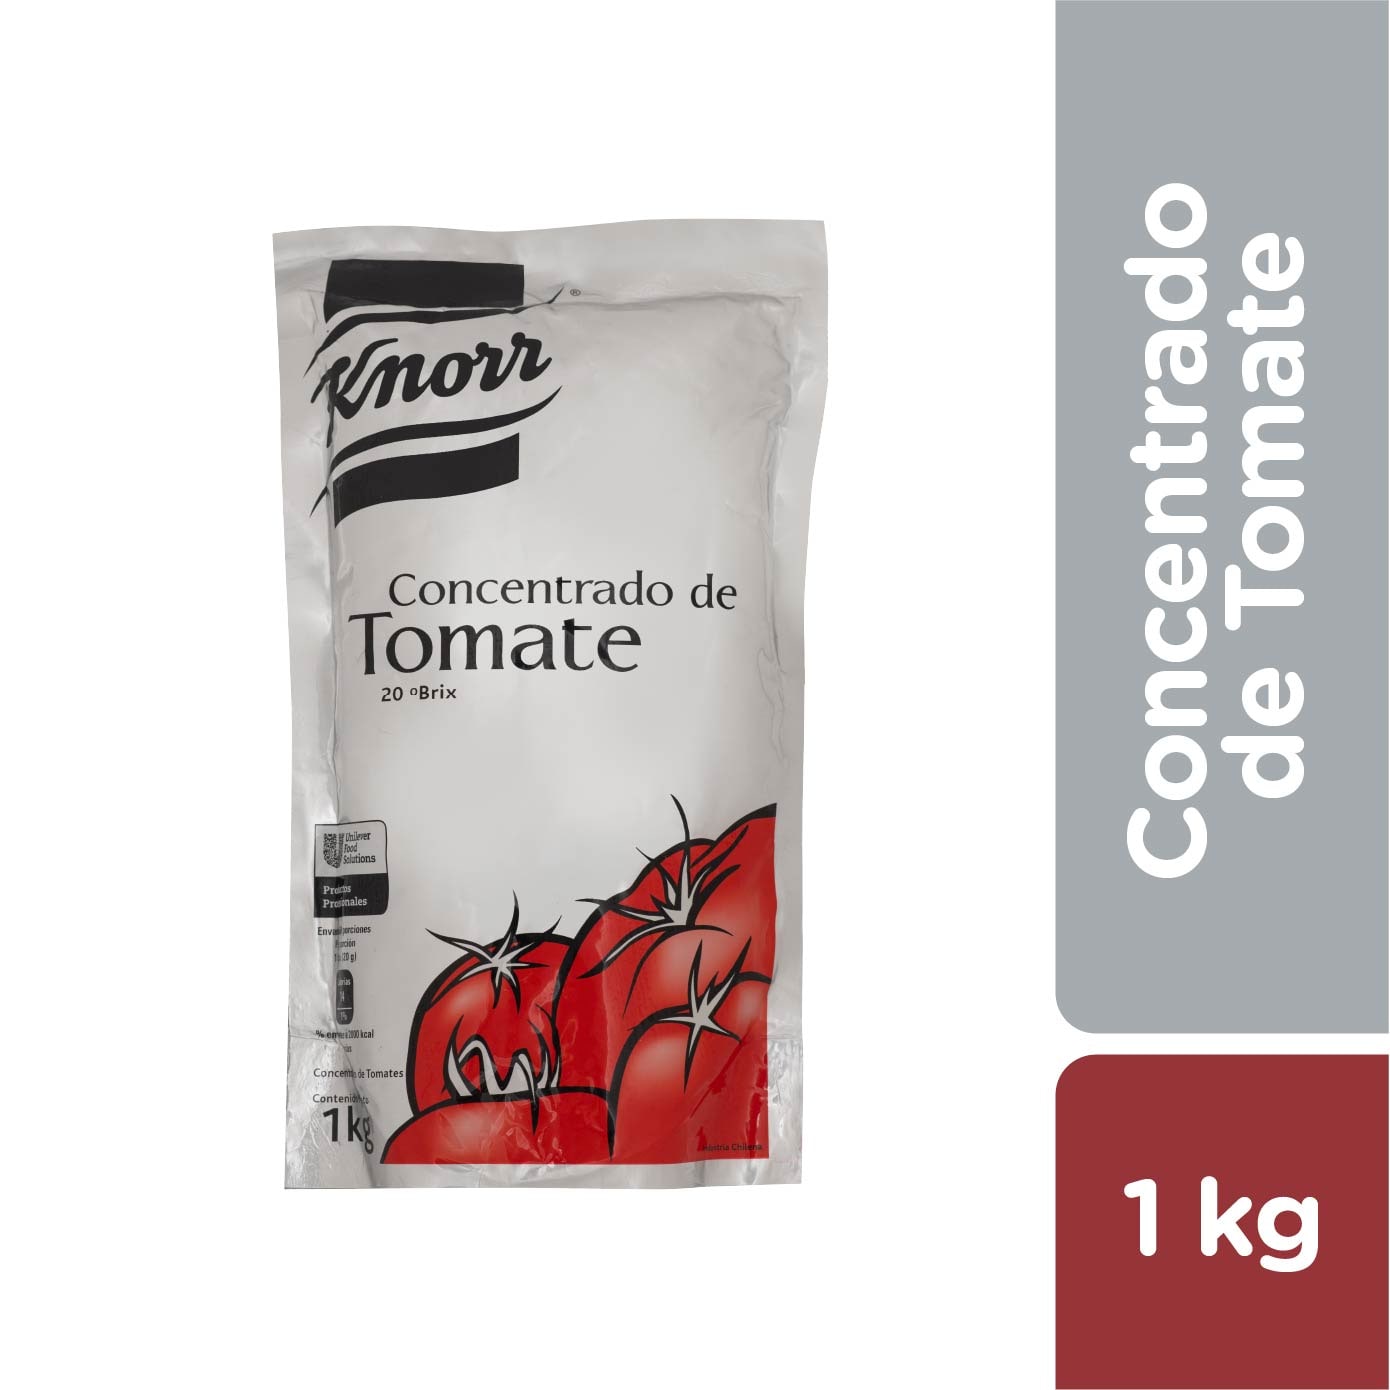 Knorr Extra Concentrado de Tomate 1 kg